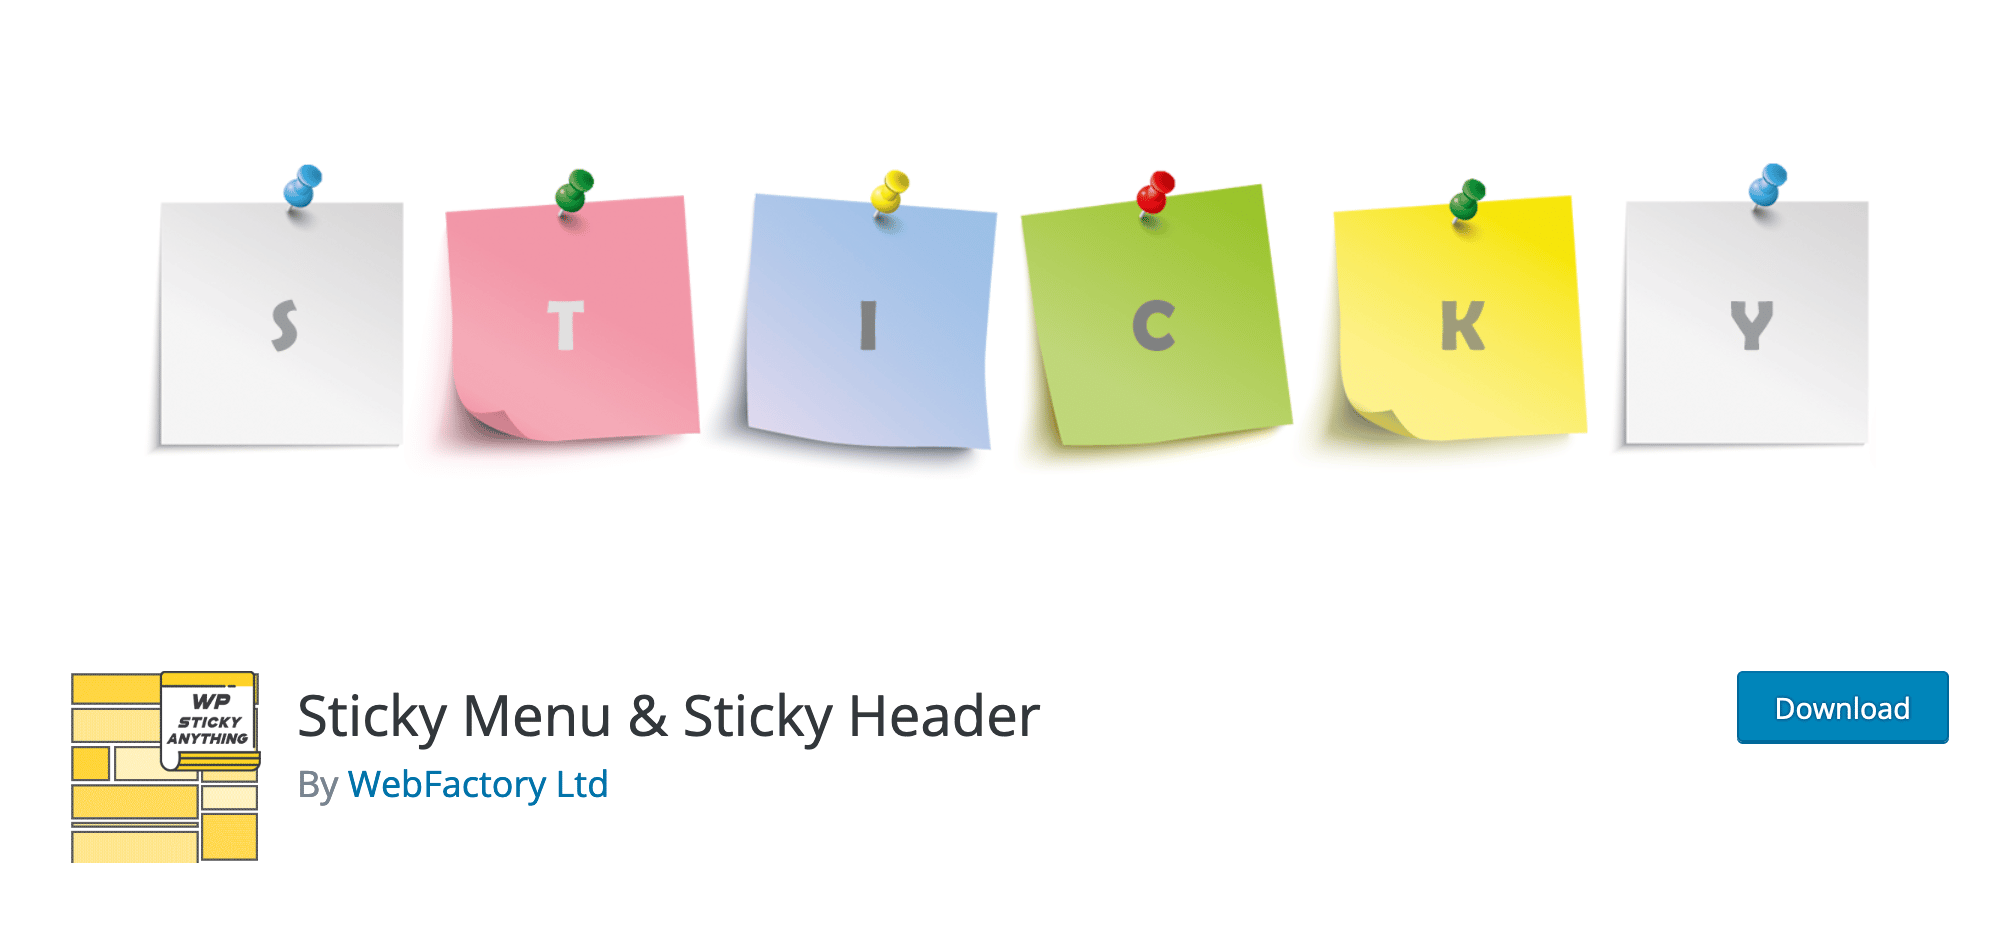 The Sticky Menu & Sticky Header plugin by WebFactory Ltd.